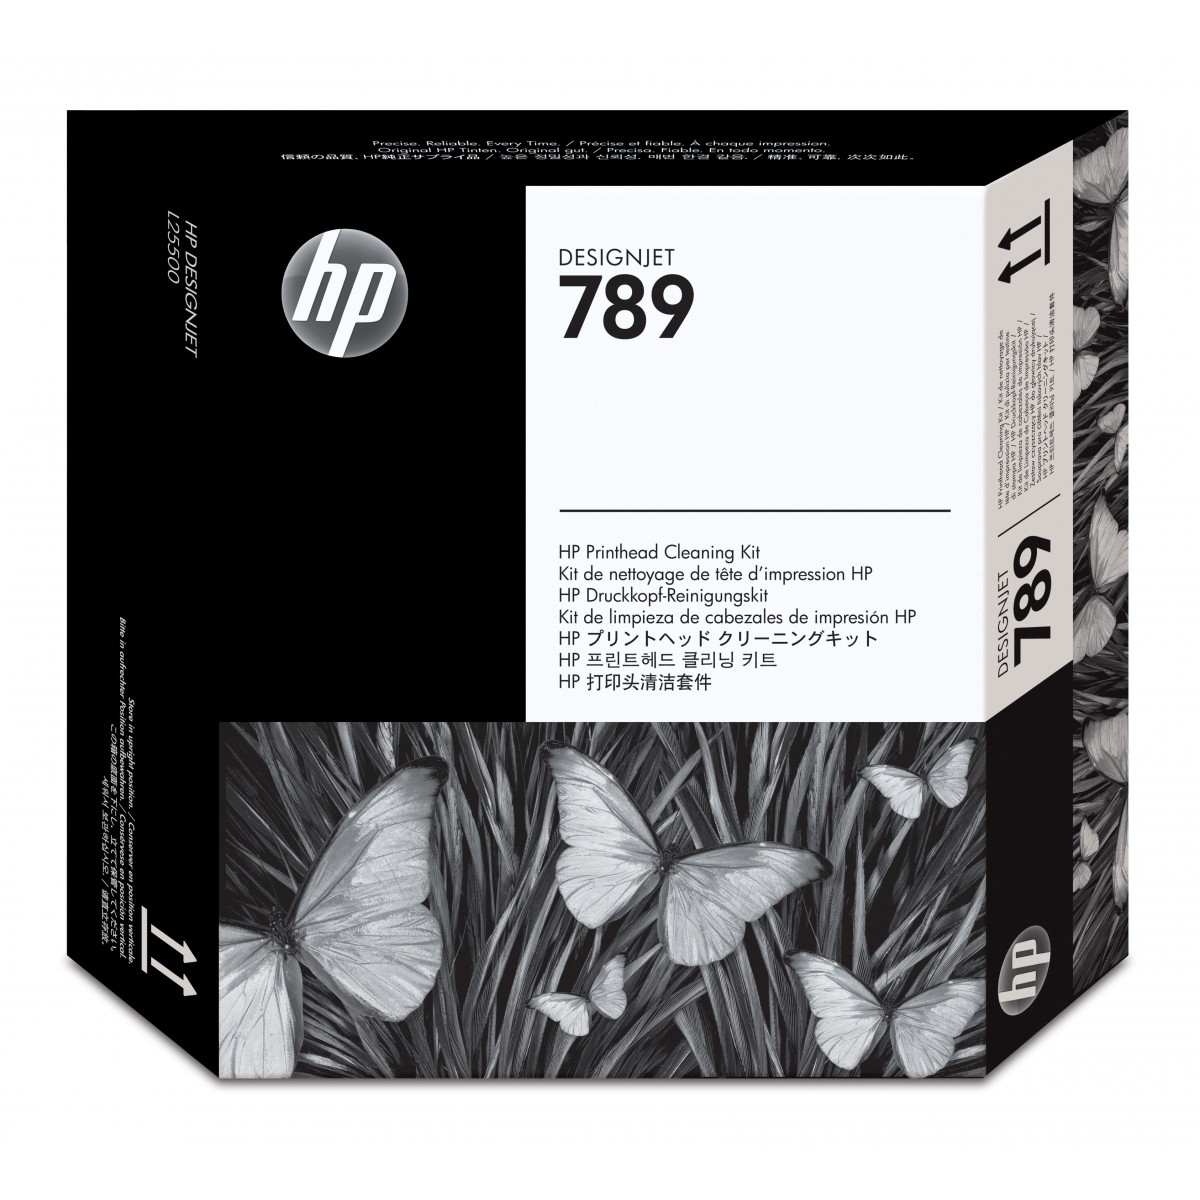 HP 789 DesignJet Printhead Cleaning Kit - HP - Inkjet - HP DesignJet L25500 Printer series - Singapore - 20 - 80% - 15 - 30 °C